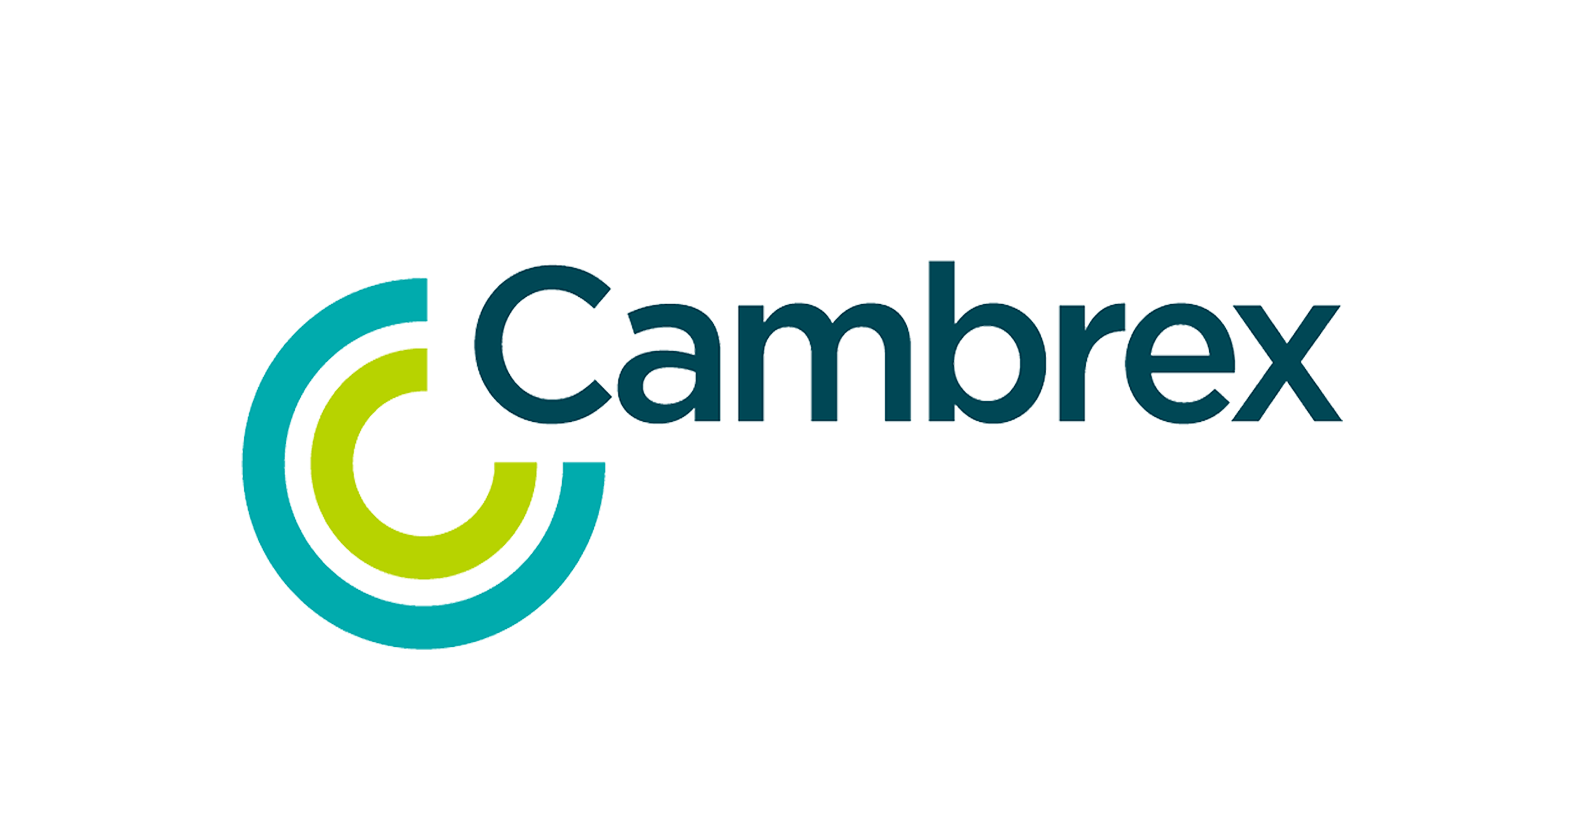 cambrex-new